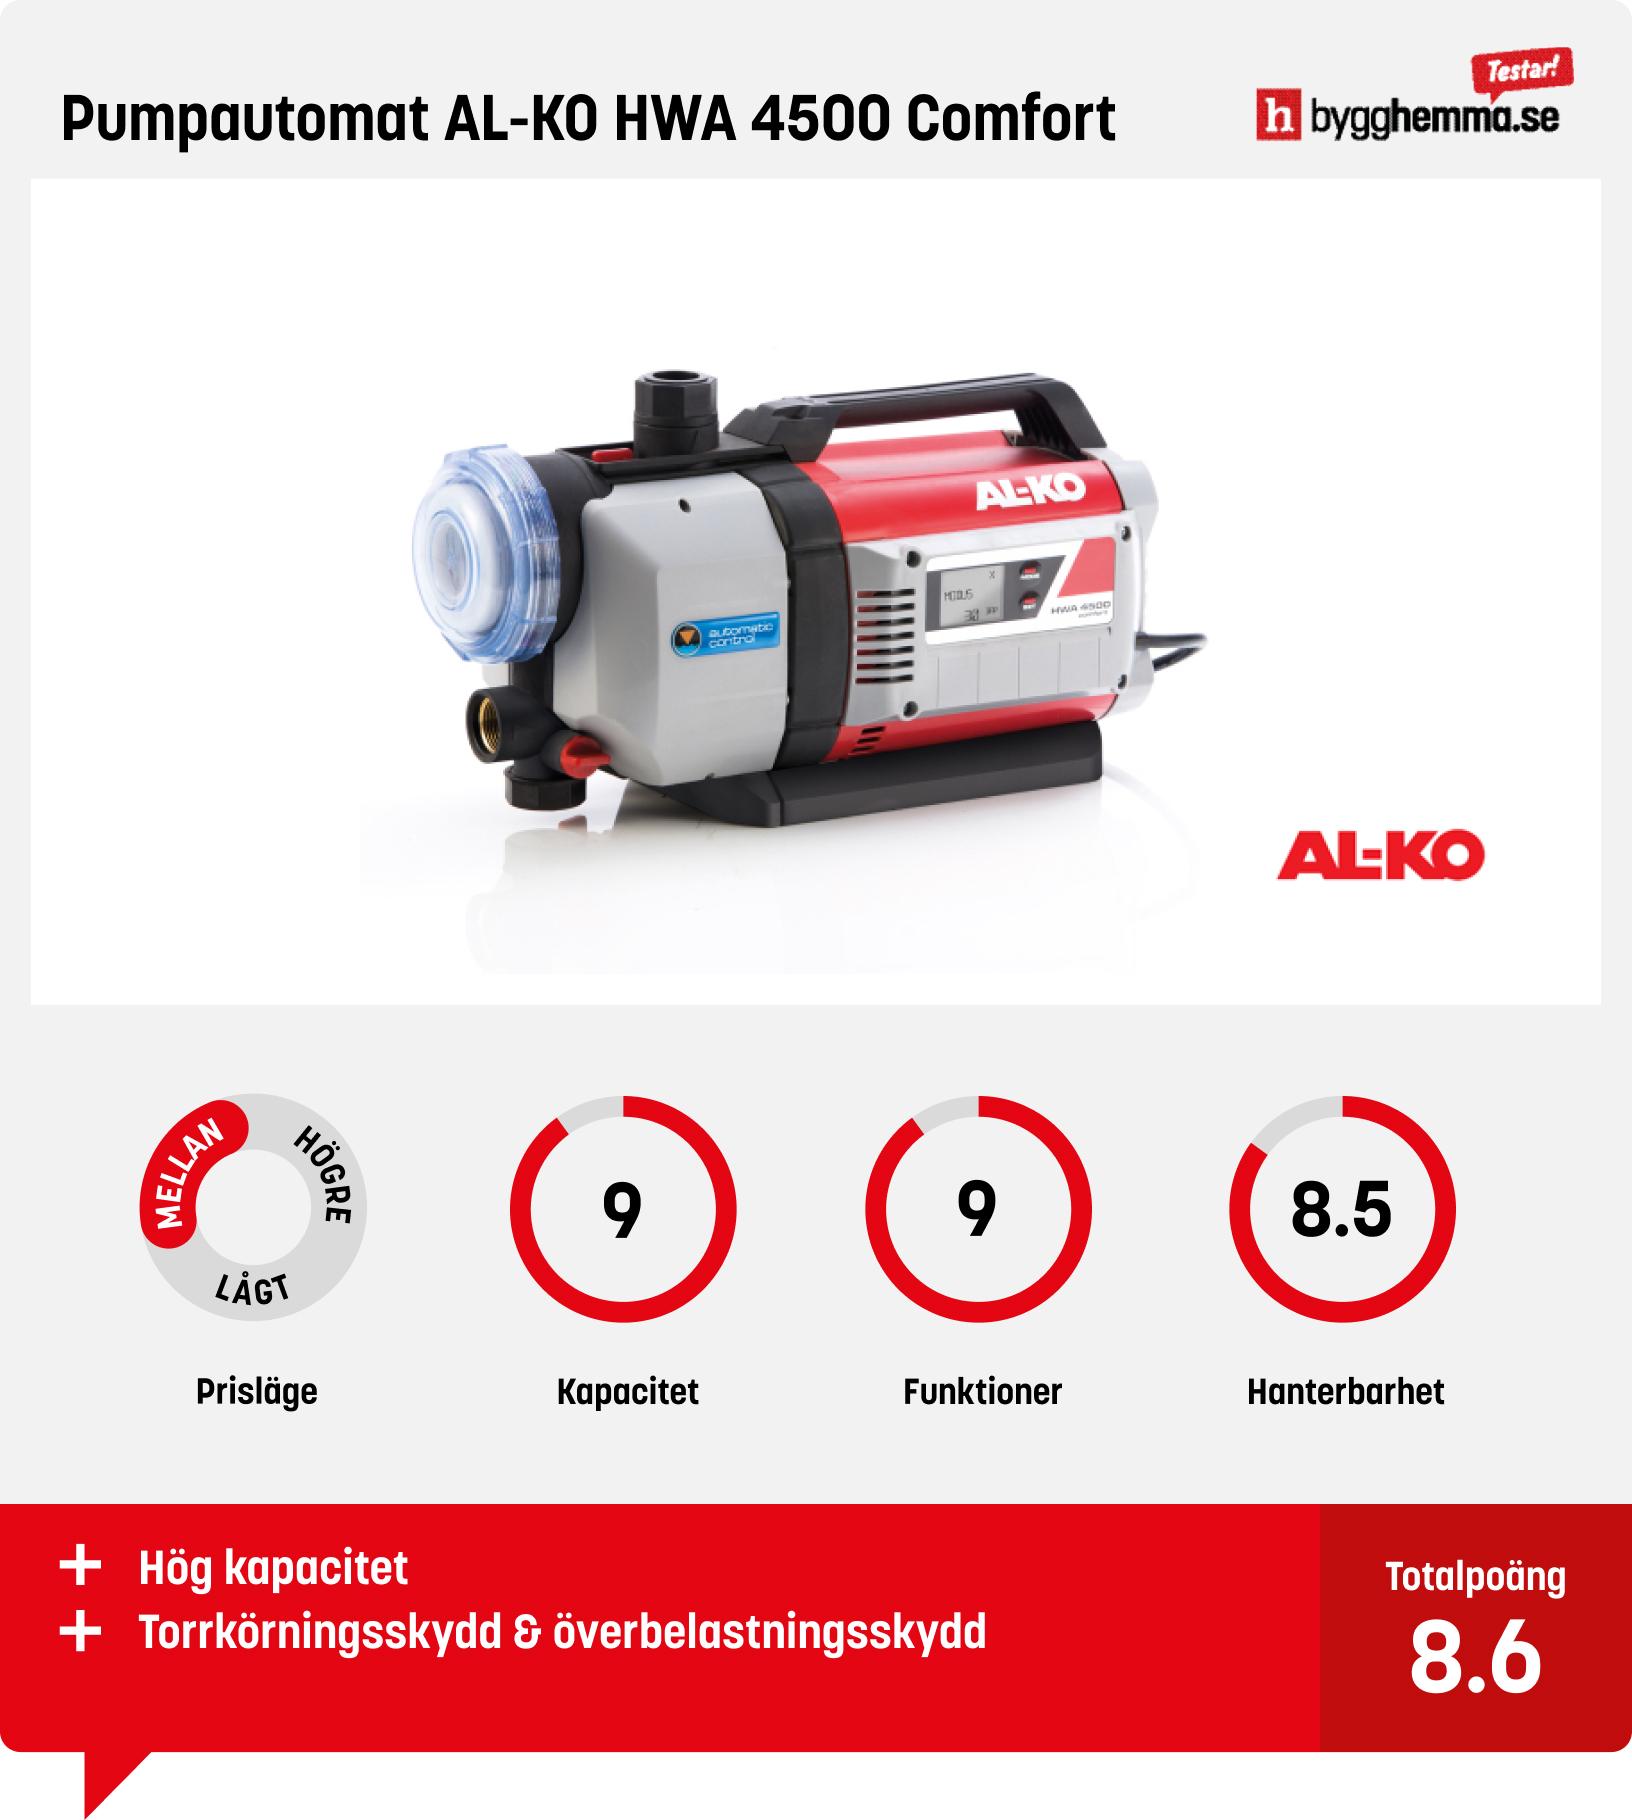 Trädgårdspump bäst i test - Pumpautomat AL-KO HWA 4500 Comfort